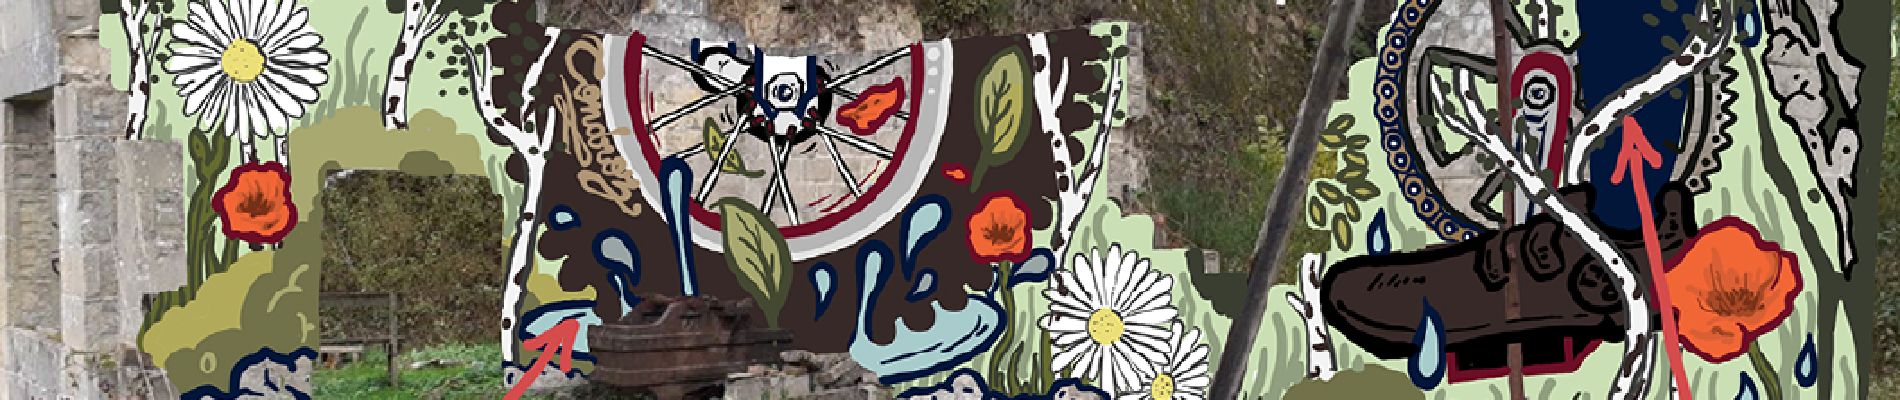 POI Gesves - Fresque murale 